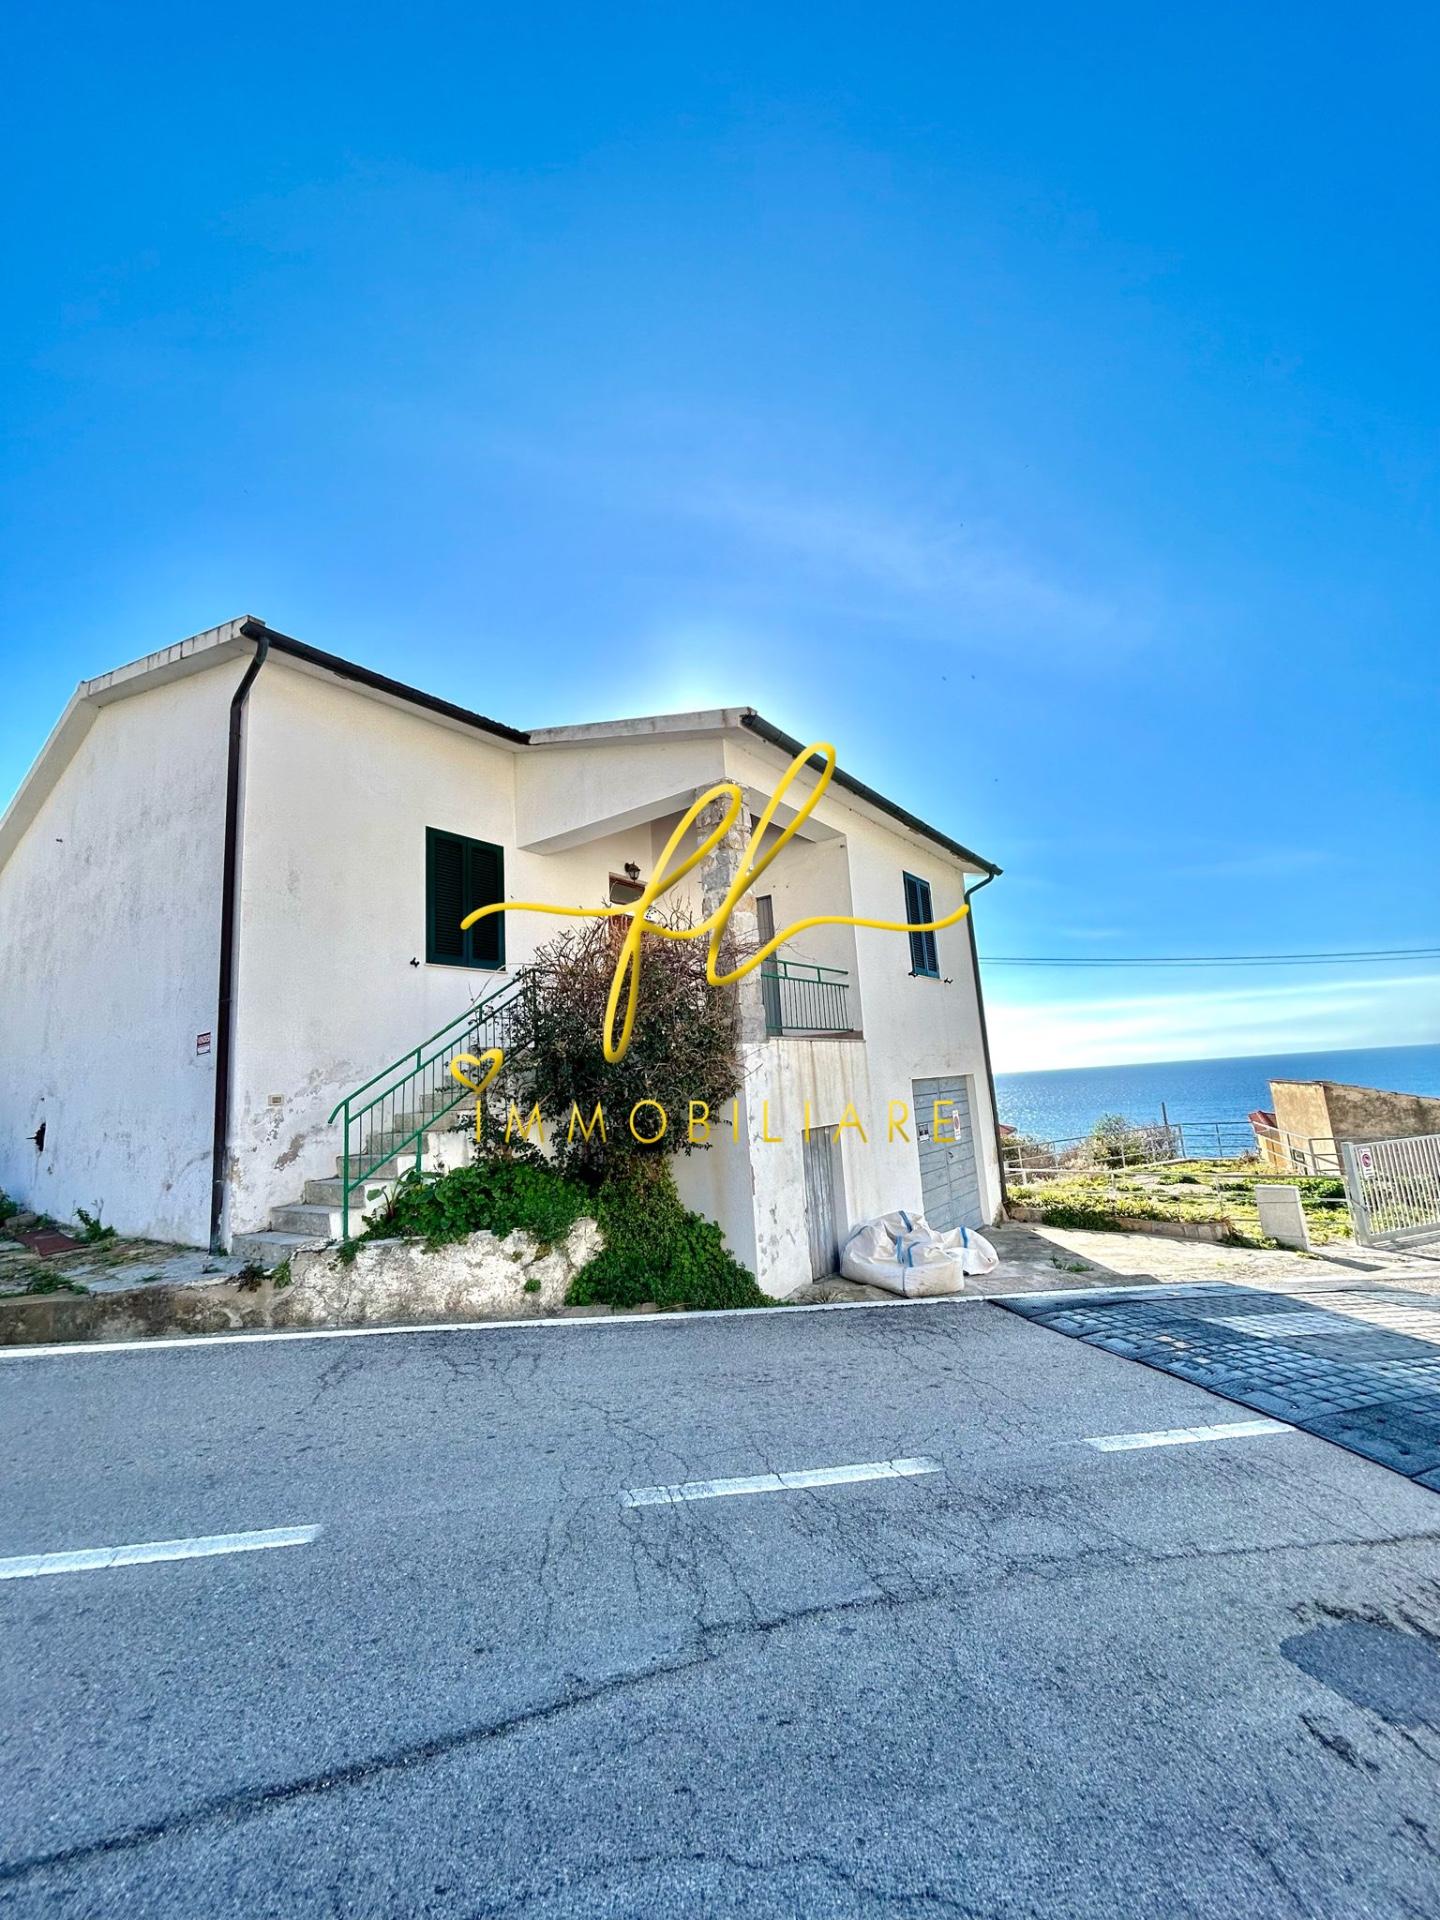 Villa in vendita a Marciana, 5 locali, prezzo € 500.000 | PortaleAgenzieImmobiliari.it